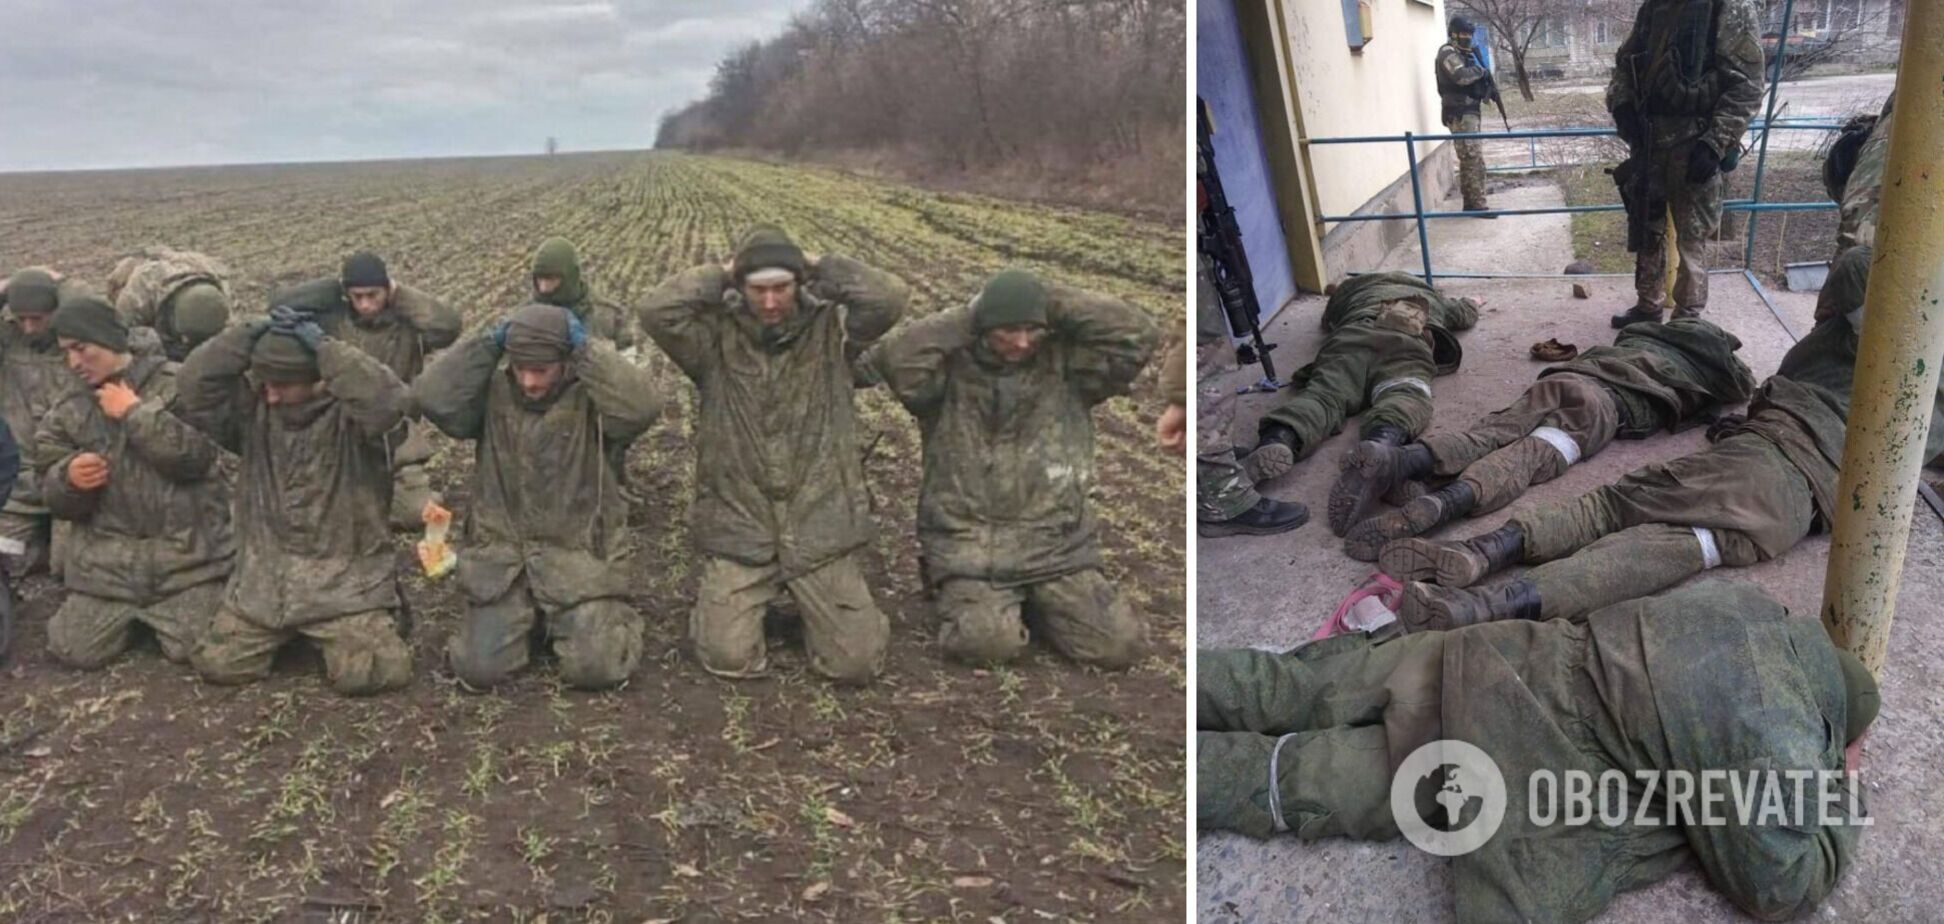 Арестович заявил, что Украина создаст централизованные лагеря для пленных российских оккупантов. Видео